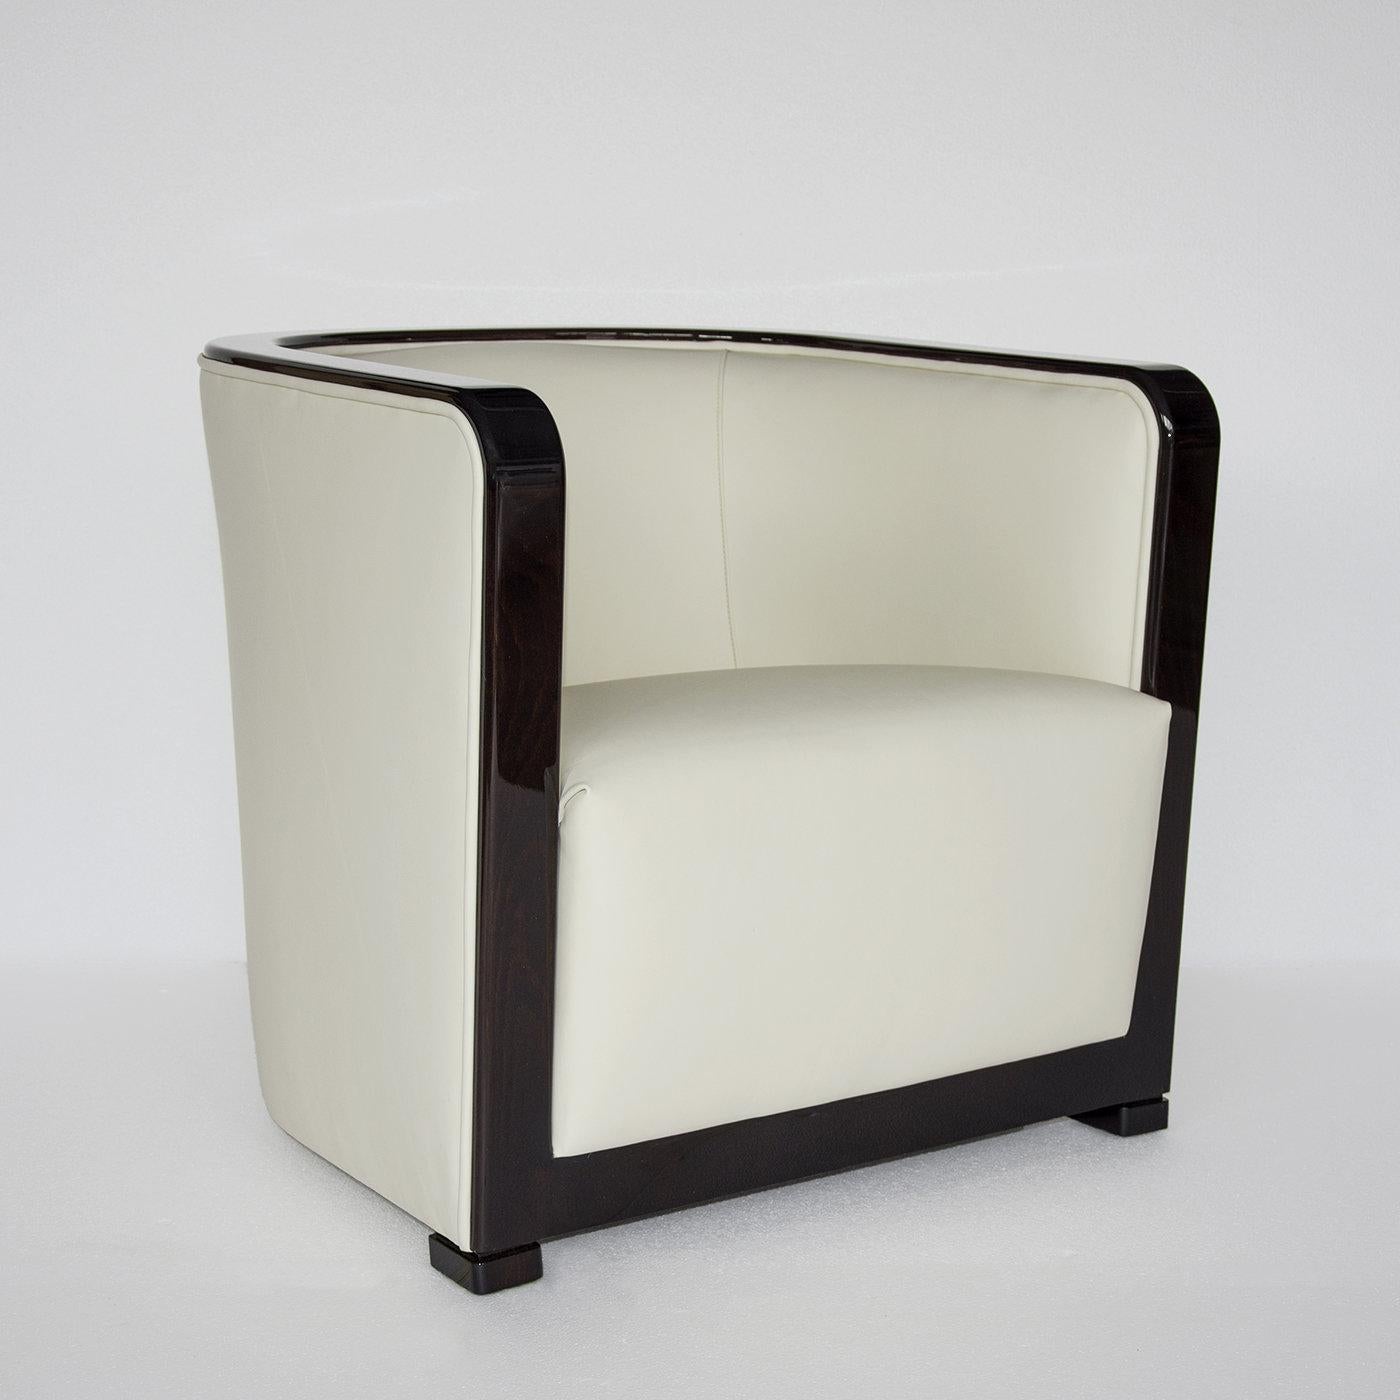 Mit seiner unkonventionellen Dreiecksform und seinem Mid-Century-Look ist der Tria Sessel ein auffälliges Statement in einem modernen Zuhause oder Büro. Das Gestell aus Massivholz kombiniert ein minimalistisches, stromlinienförmiges Design mit zwei